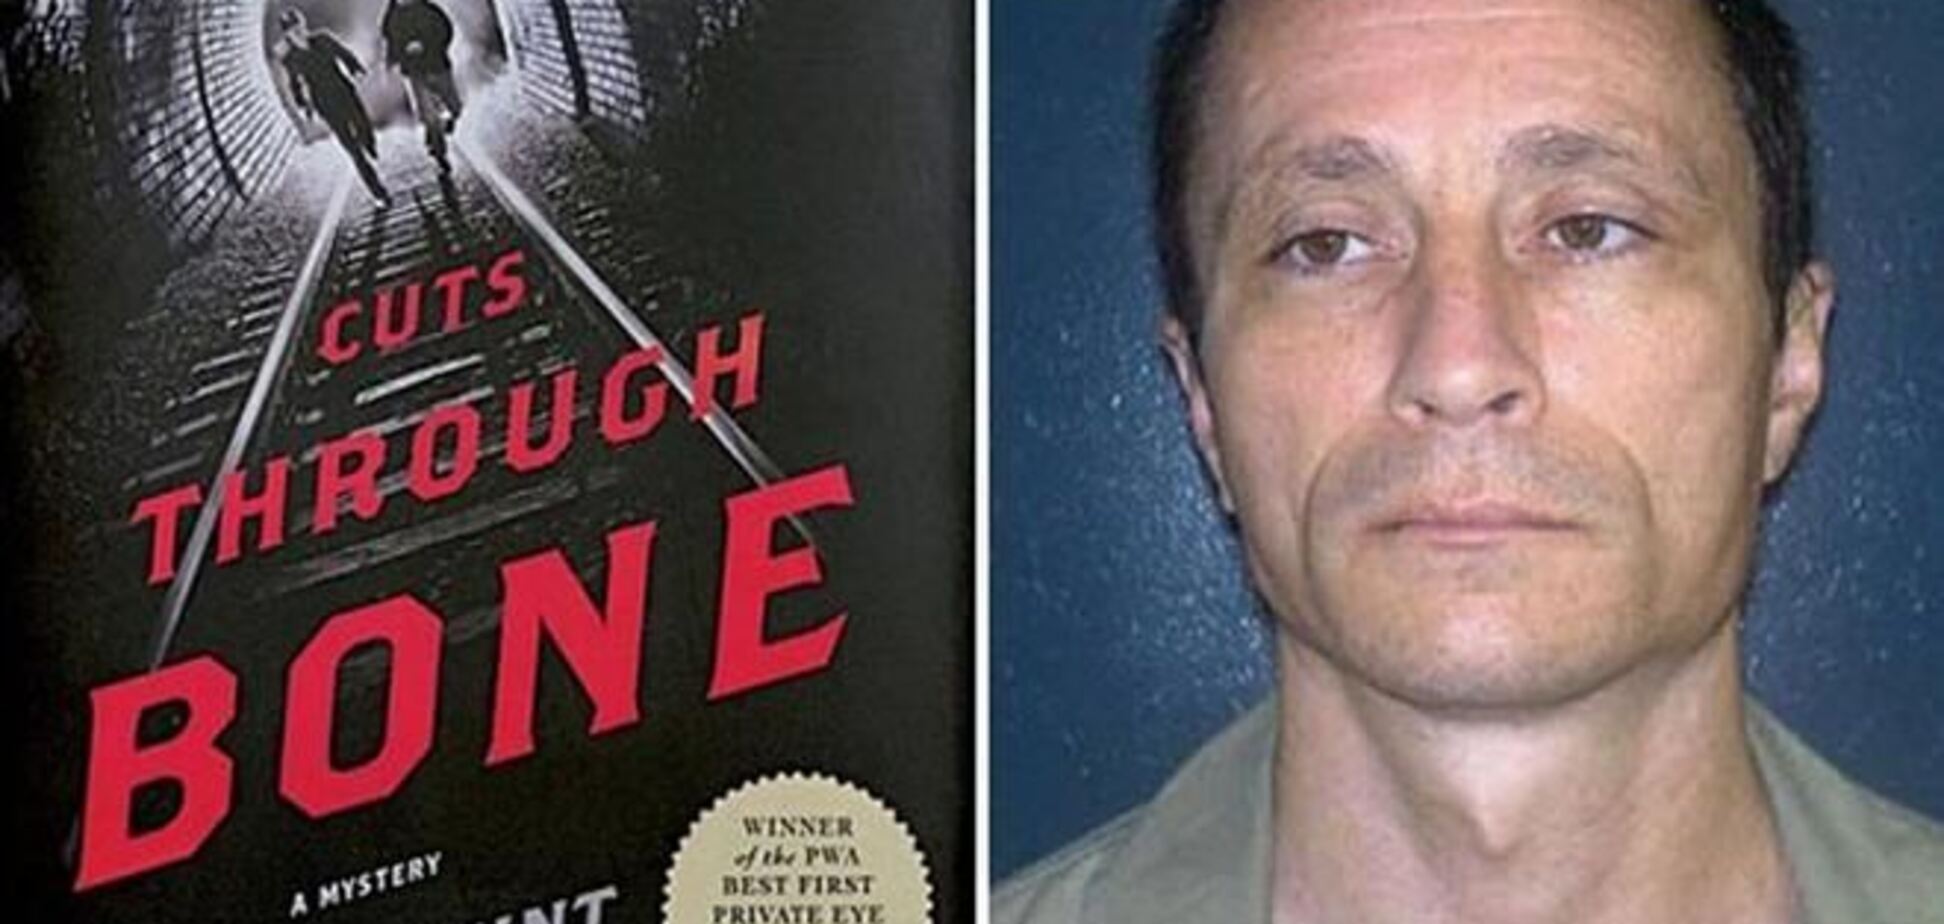 В США убийца получил литературную премию за написанный детектив 